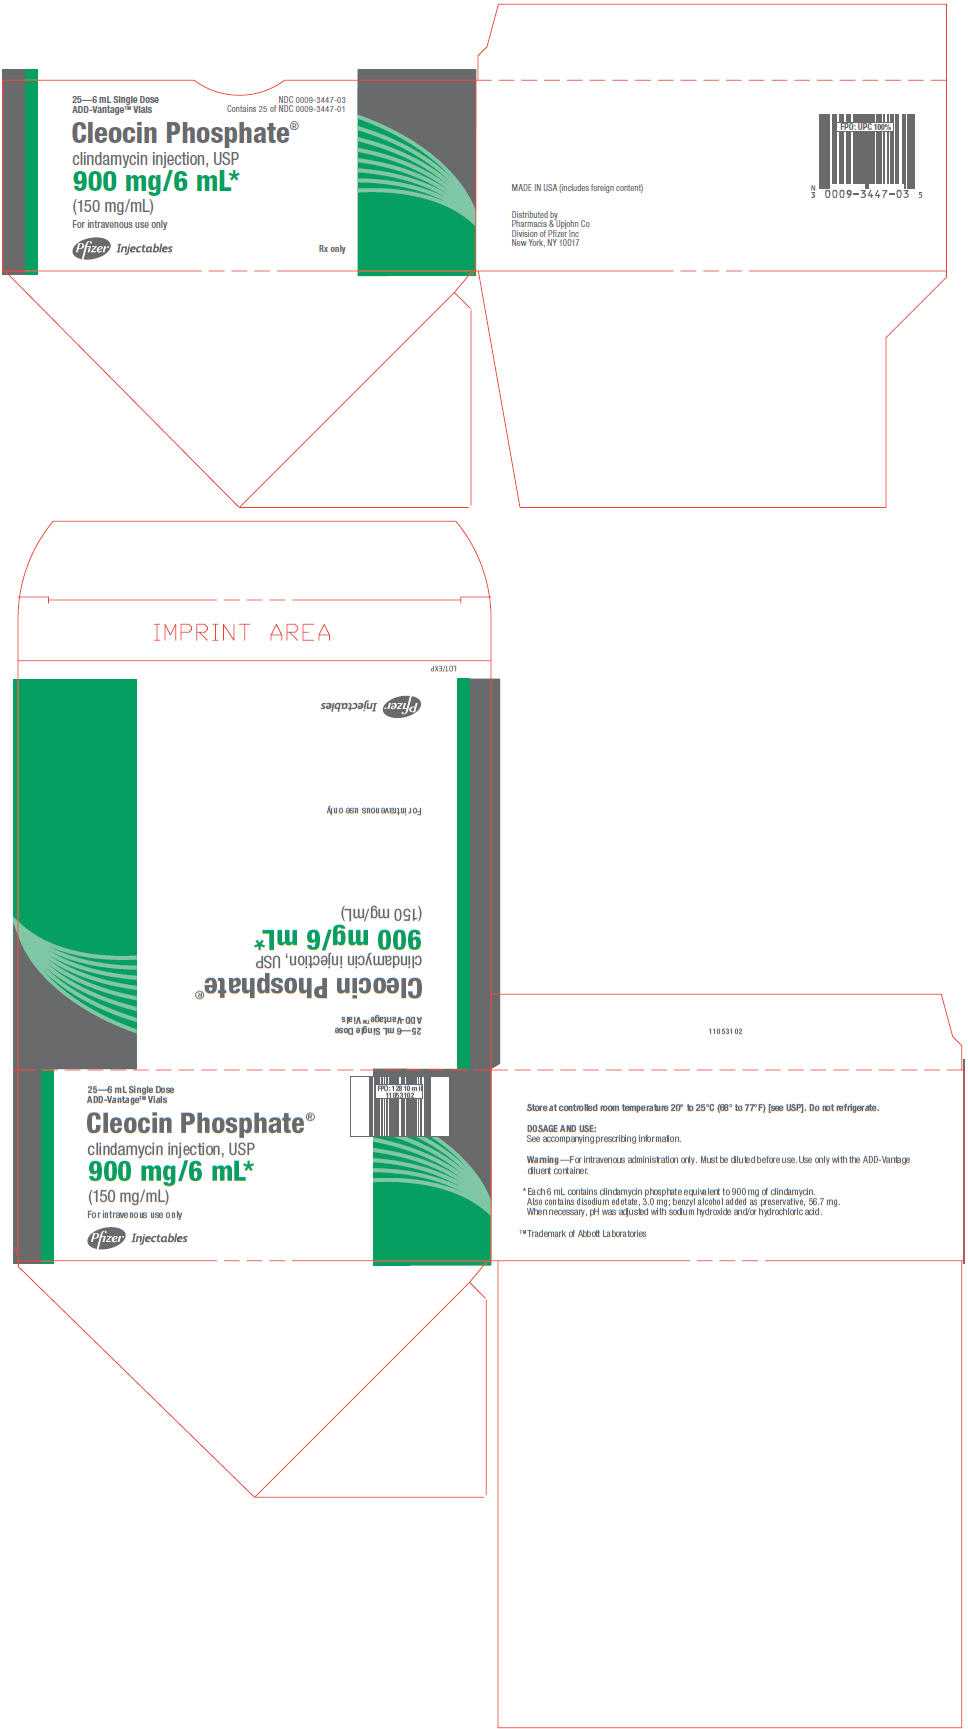 PRINCIPAL DISPLAY PANEL - 900 mg/6 mL Vial Carton